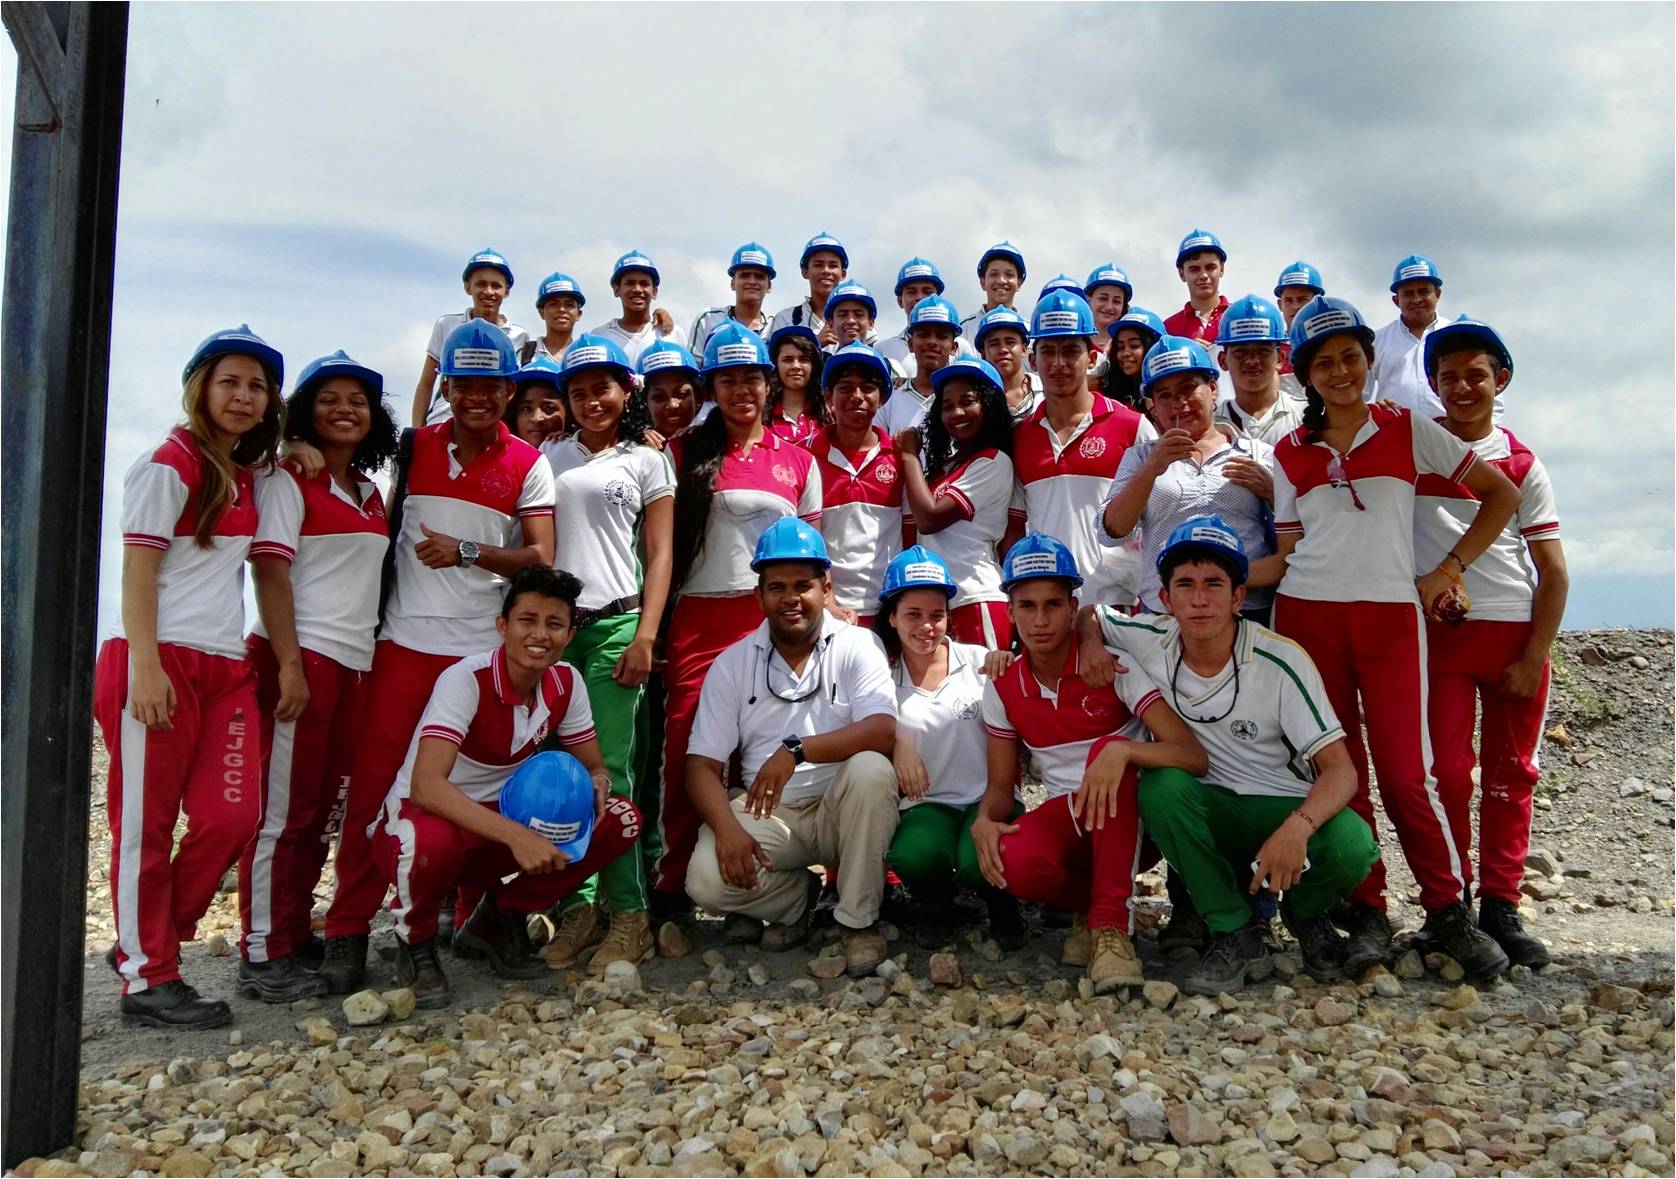 * 11th grade students from the educational institution José Guillermo Castro Castro in La Jagua de Ibirico 